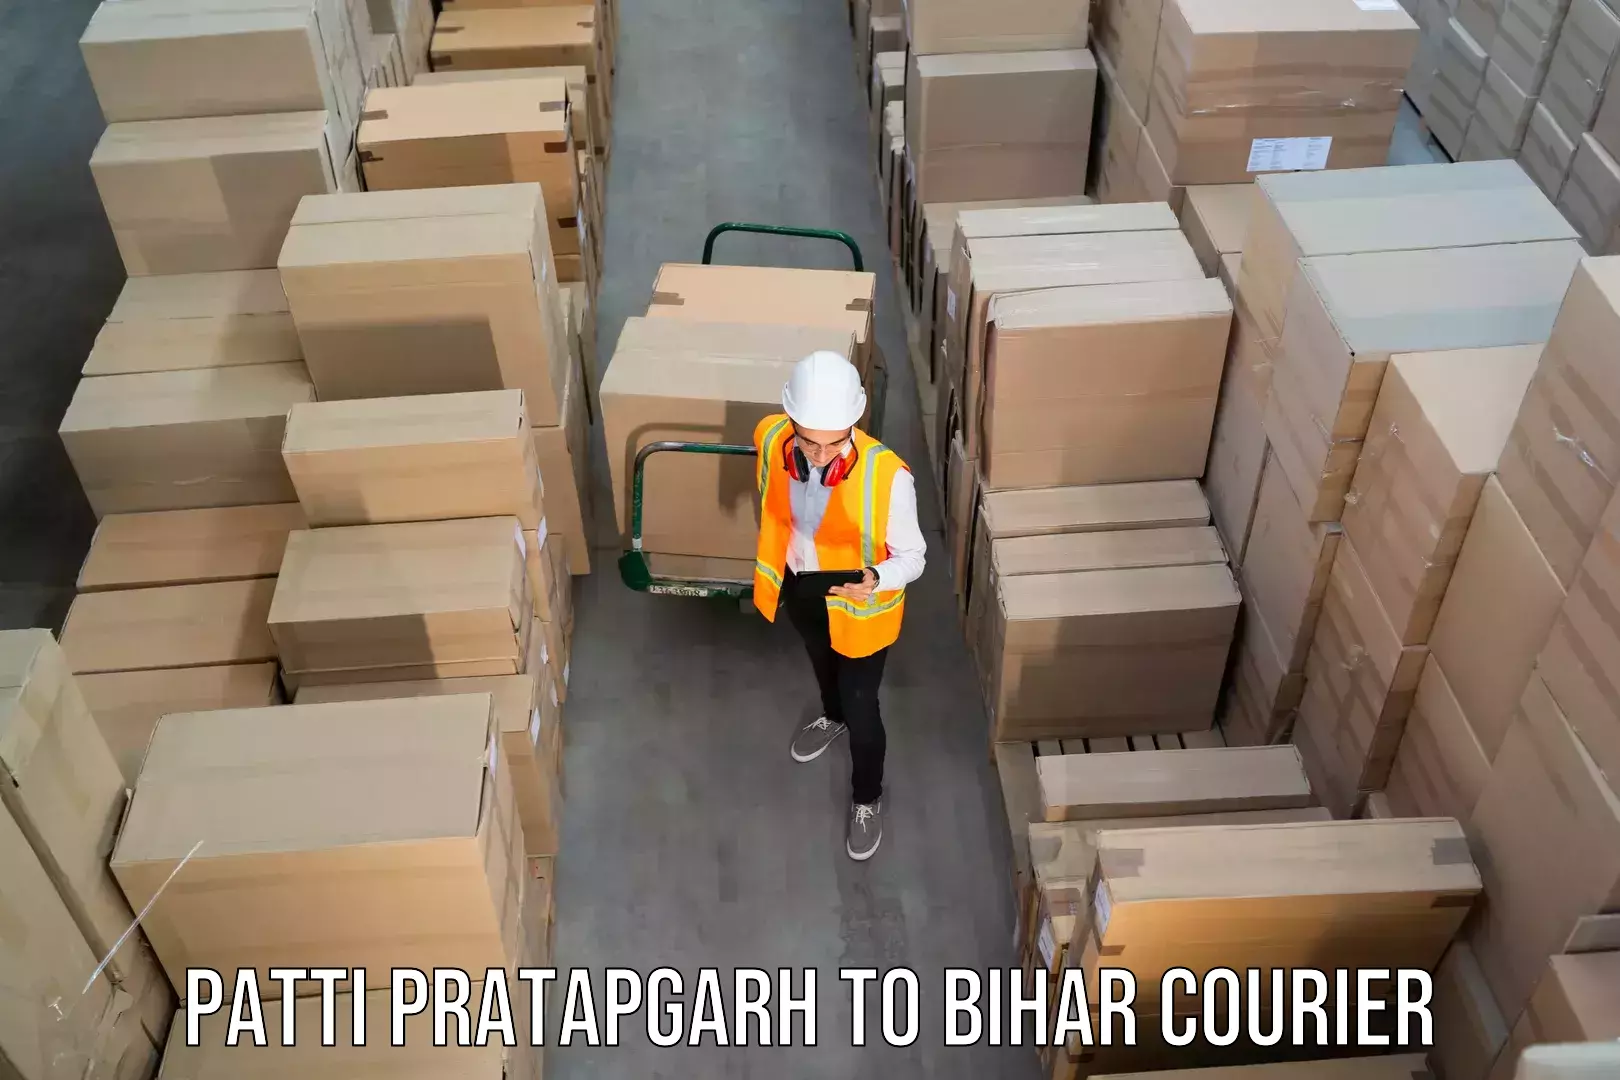 Express courier facilities Patti Pratapgarh to Birpur